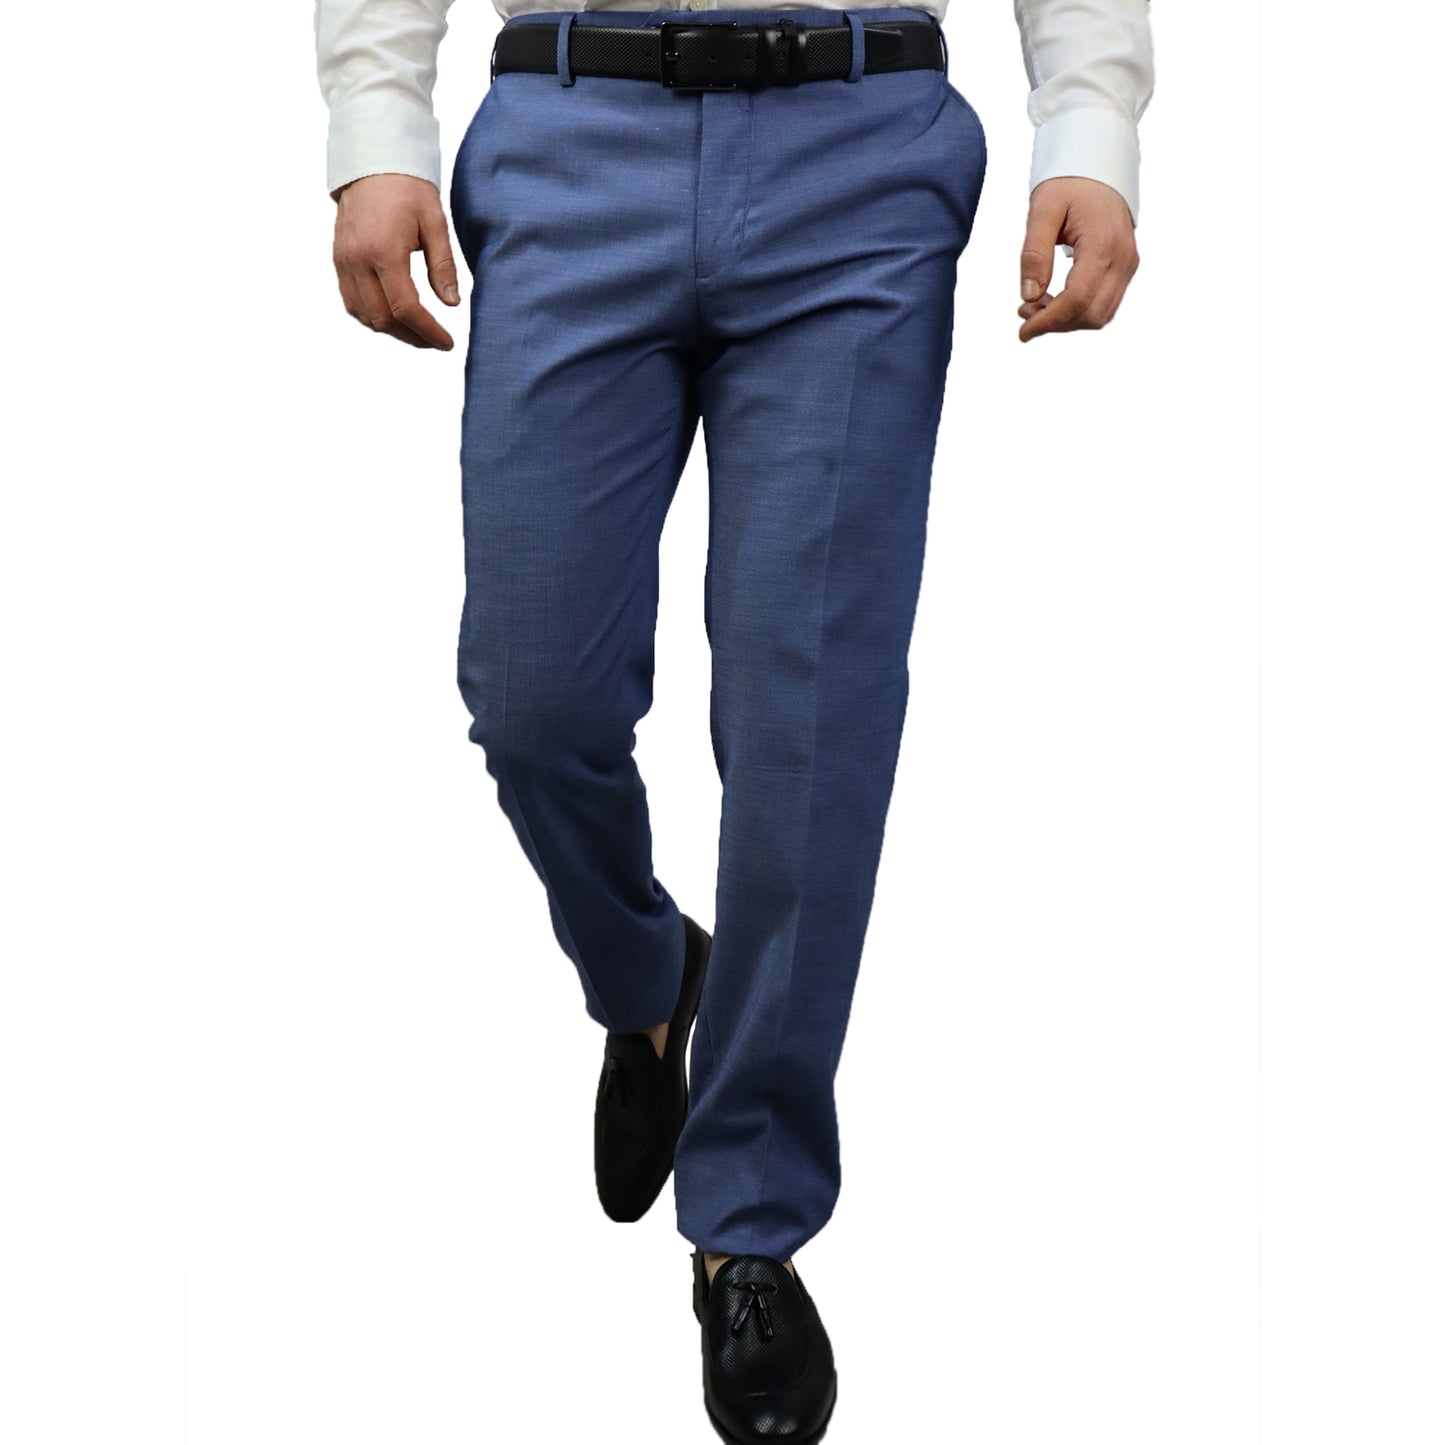 Κοστούμι Ανδρικό Μπλε Τερυλέν (Tery/Rayon/Spandex) Semi-Slim Fit 502624 4-BLUE